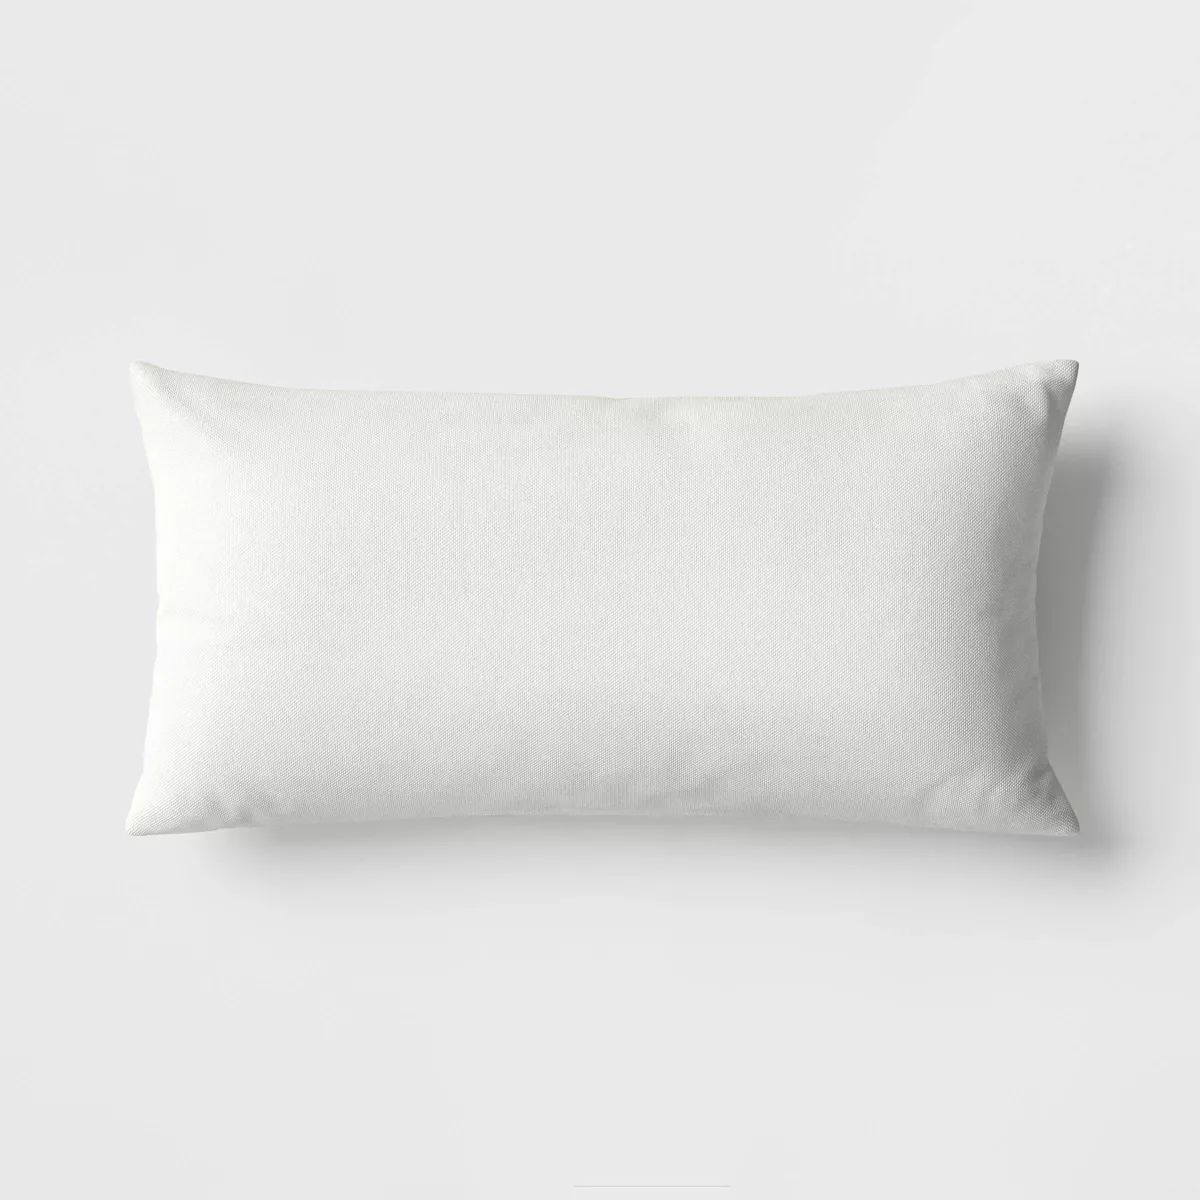 12"x24" Solid Woven Rectangular Outdoor Lumbar Pillow - Threshold™ | Target